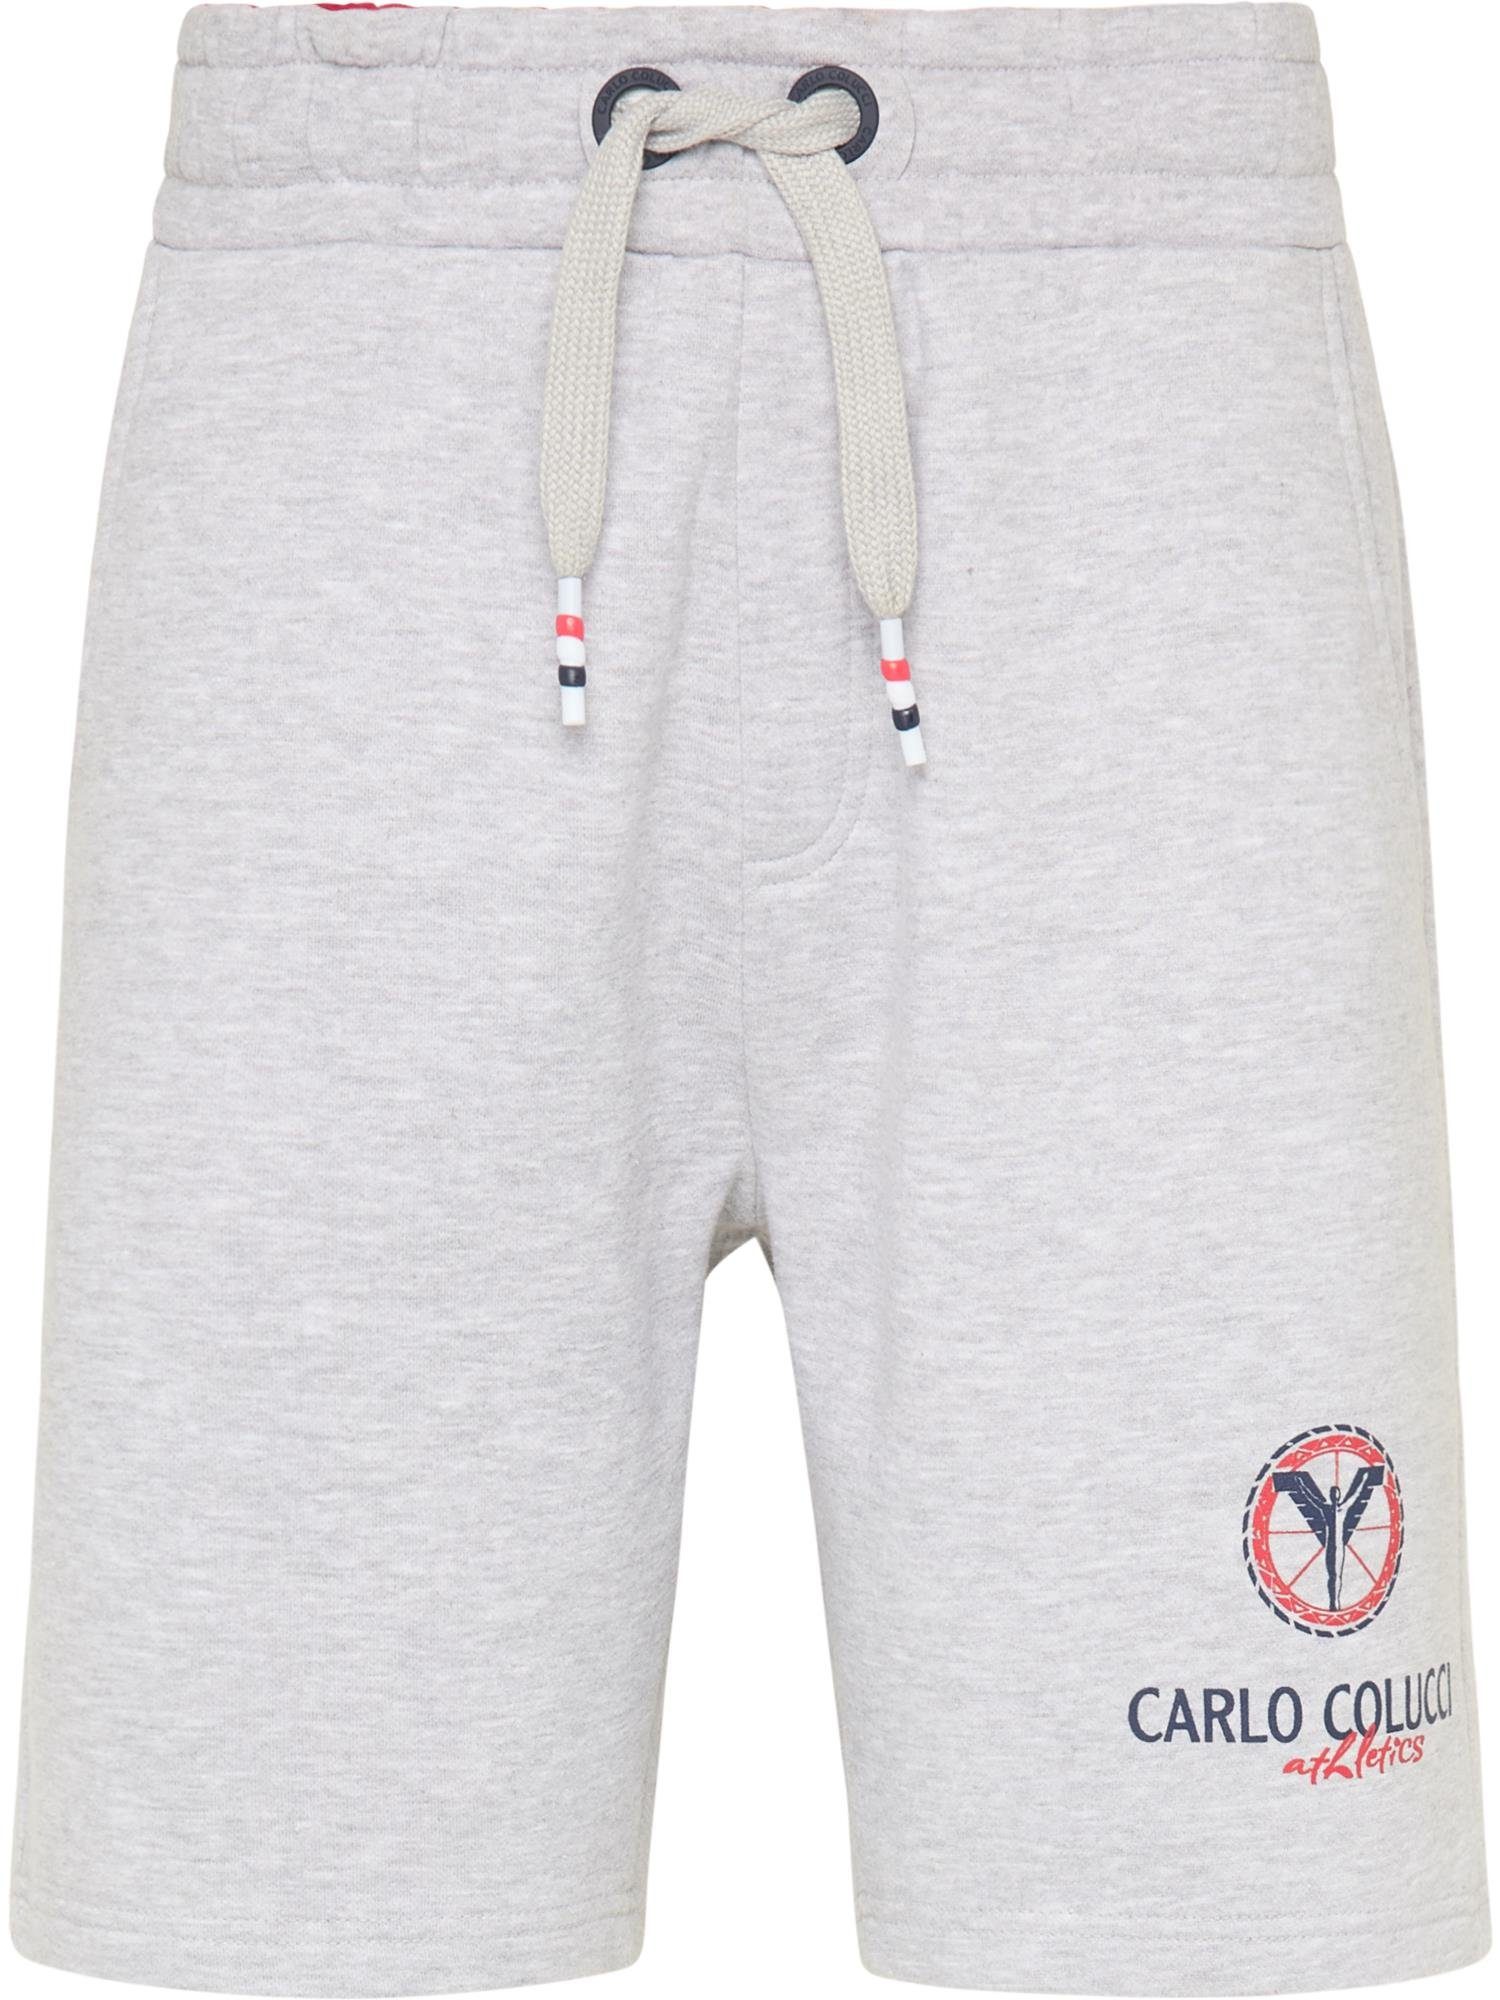 CARLO COLUCCI Shorts Contarino